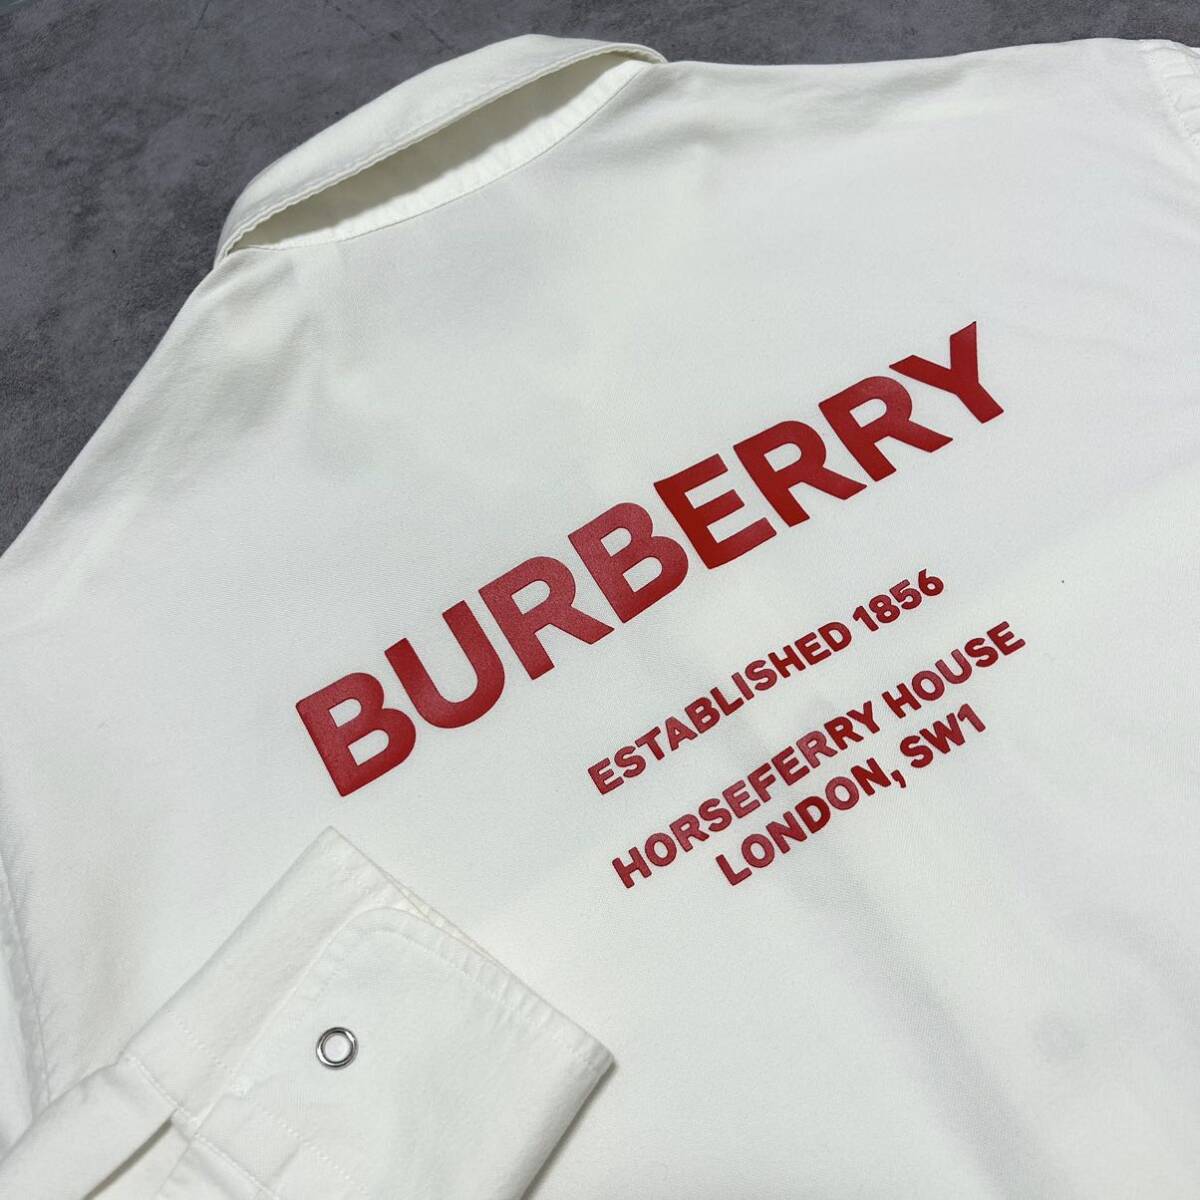  не использовался класс / современная модель *BURBERRY Burberry большой Logo рубашка с длинным рукавом платье casual белый M~L соответствует хлопок полная распродажа товар весна лето мужской 